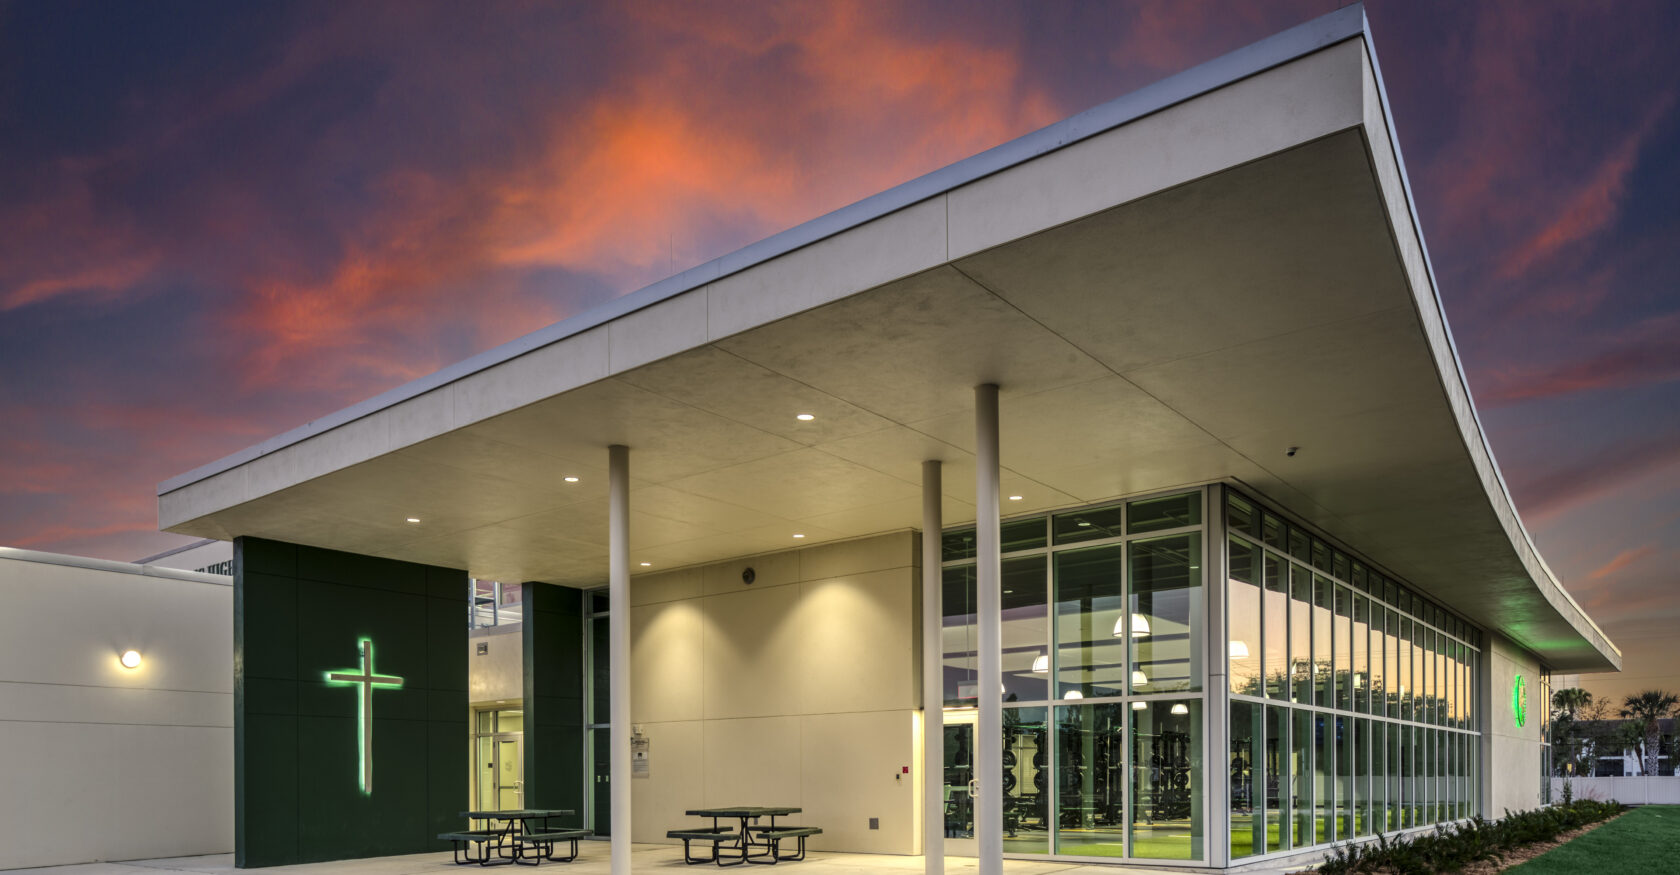 Exterior dusk shot of Tampa Catholic gym